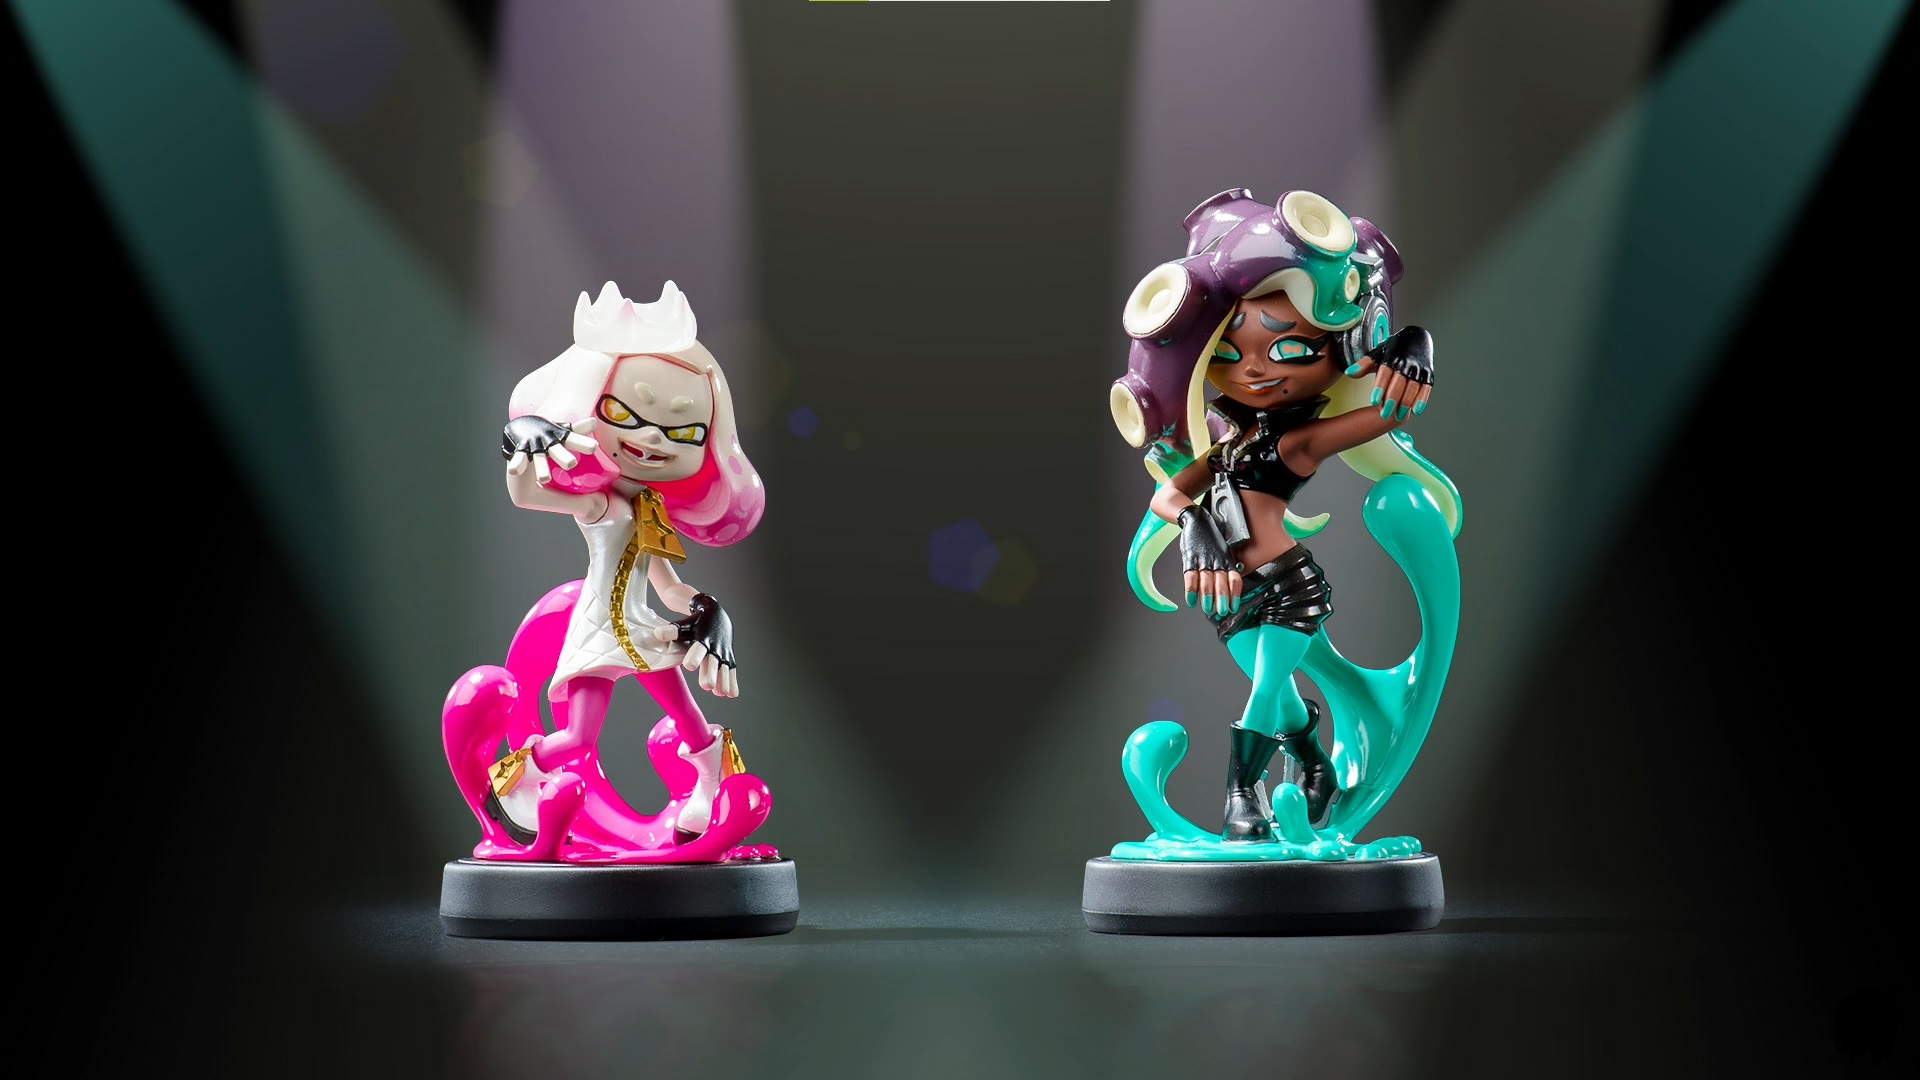 Pearl und Marina Splatoon 2 amiibo-Figuren